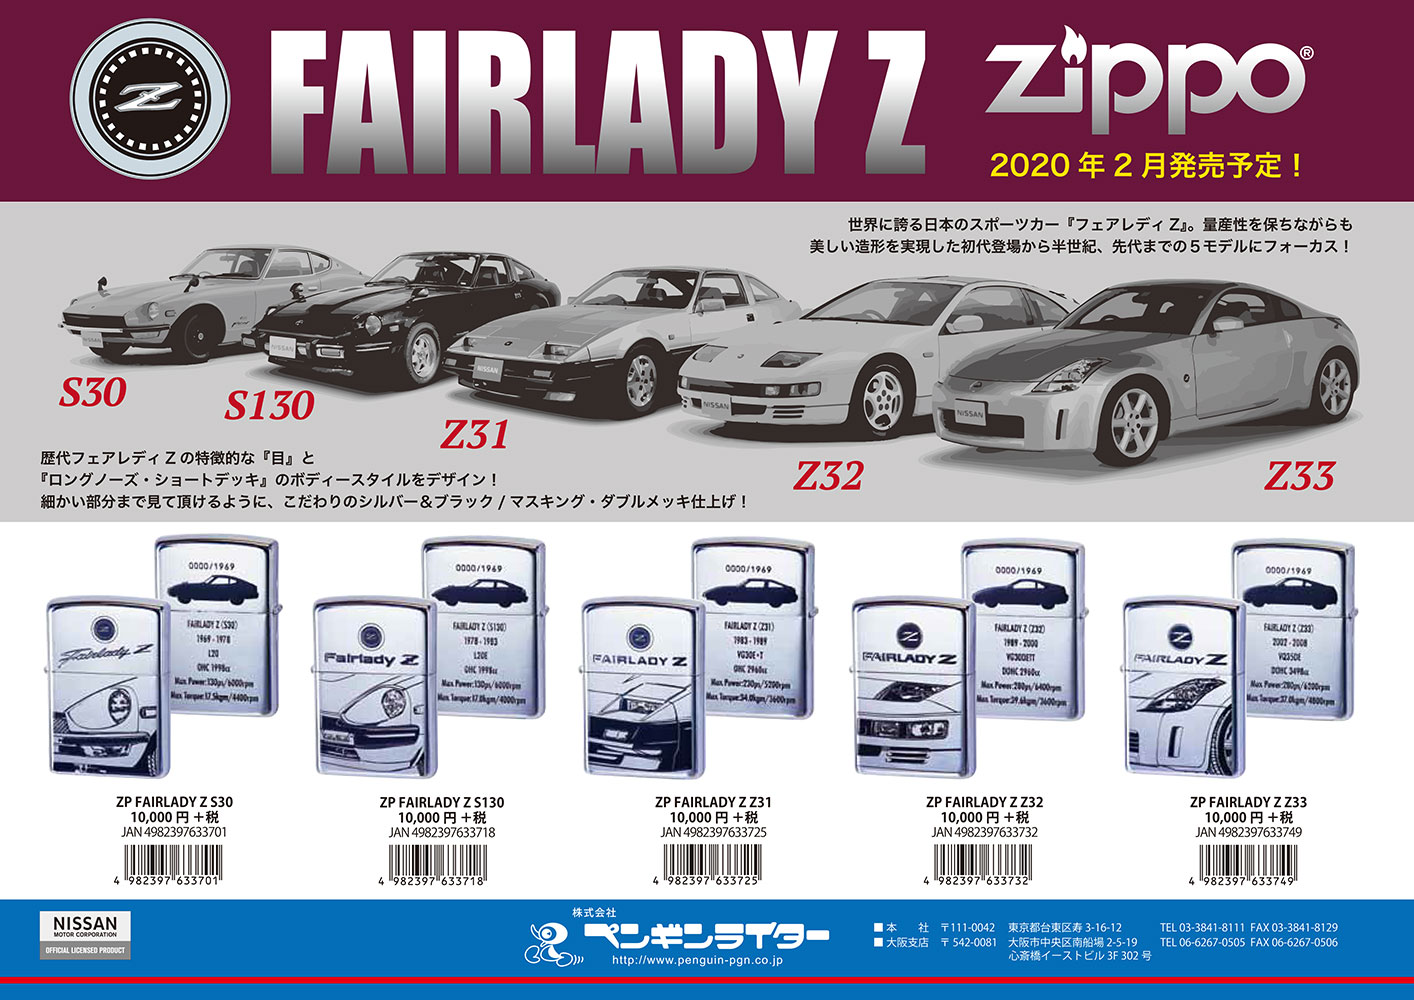 2月18日発売 ZP FAIRLADY Z フェアレディZ ZIPPO | ペンギンライター